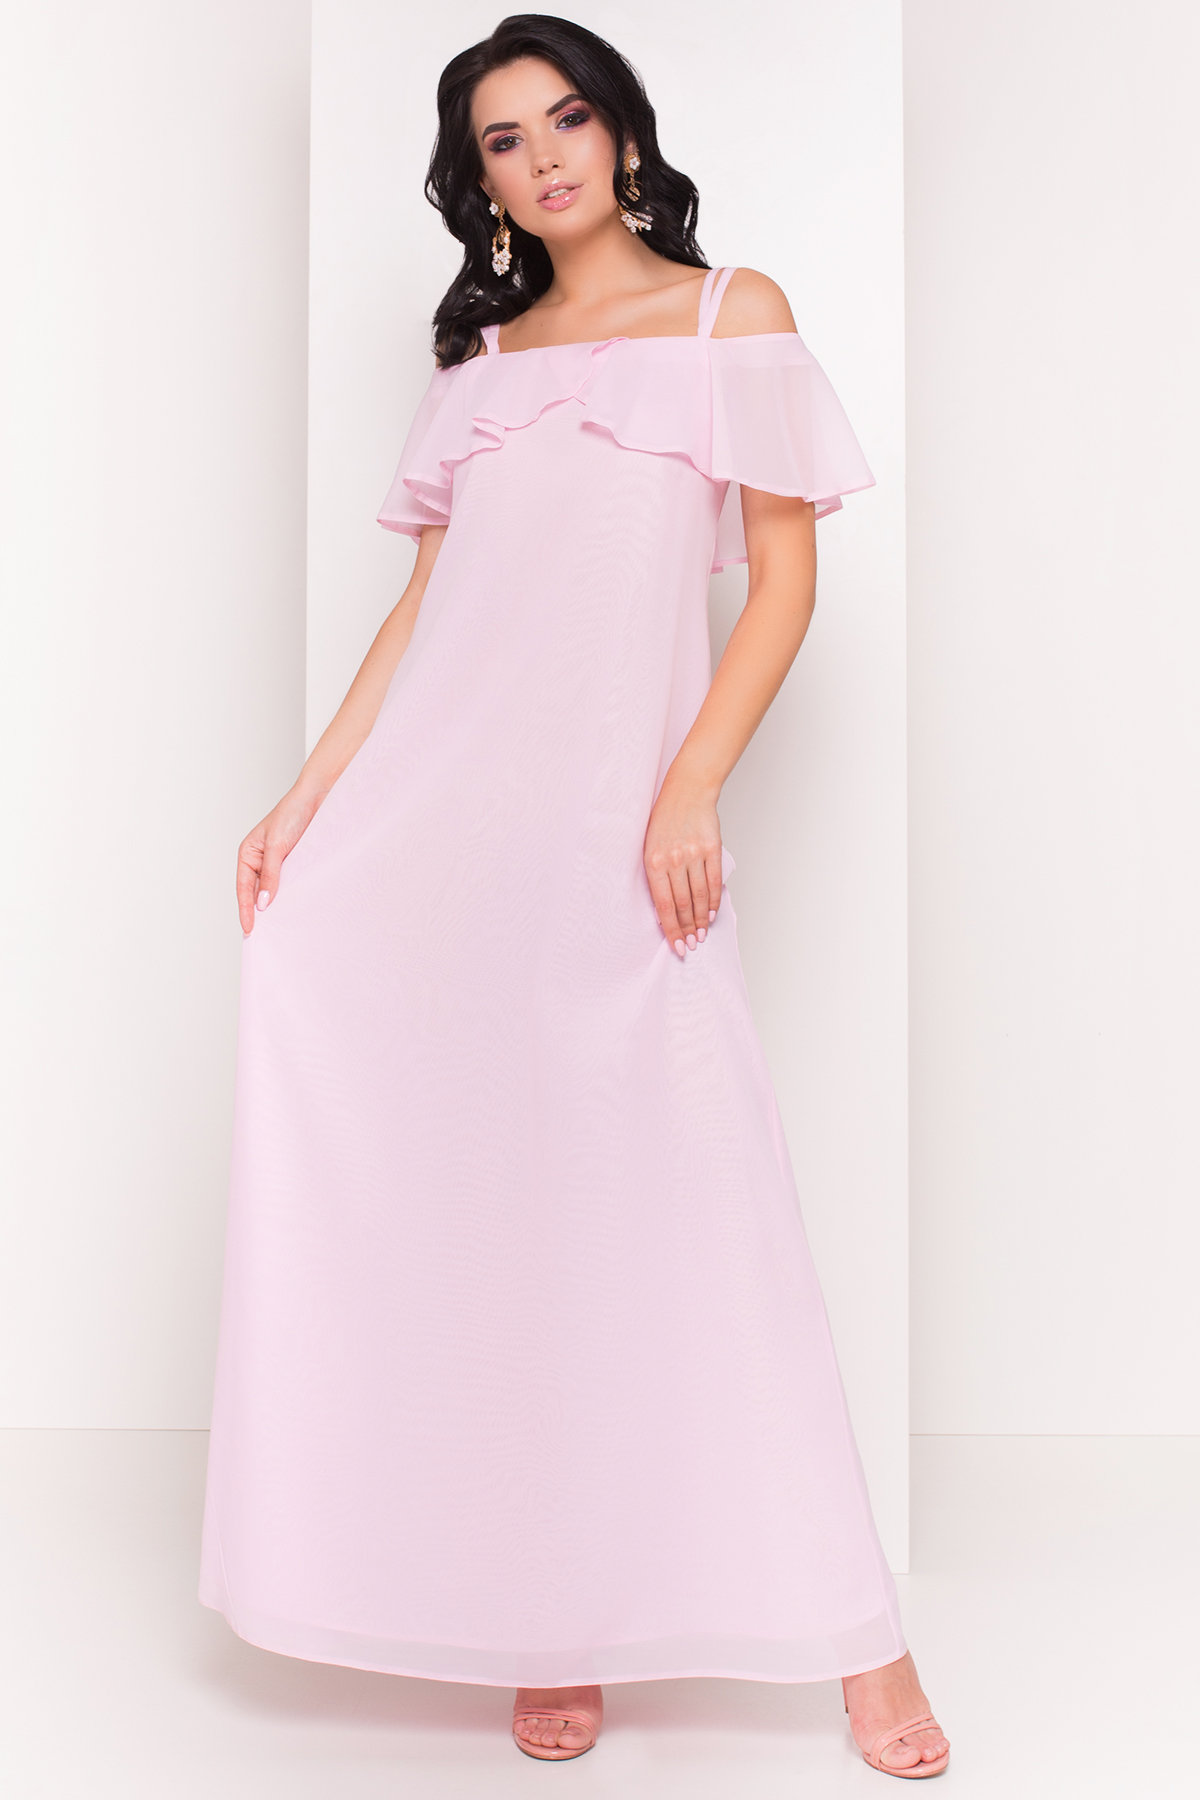 Платье Пикабу 5149 АРТ. 36234 Цвет: Розовый Светлый - фото 1, интернет магазин tm-modus.ru